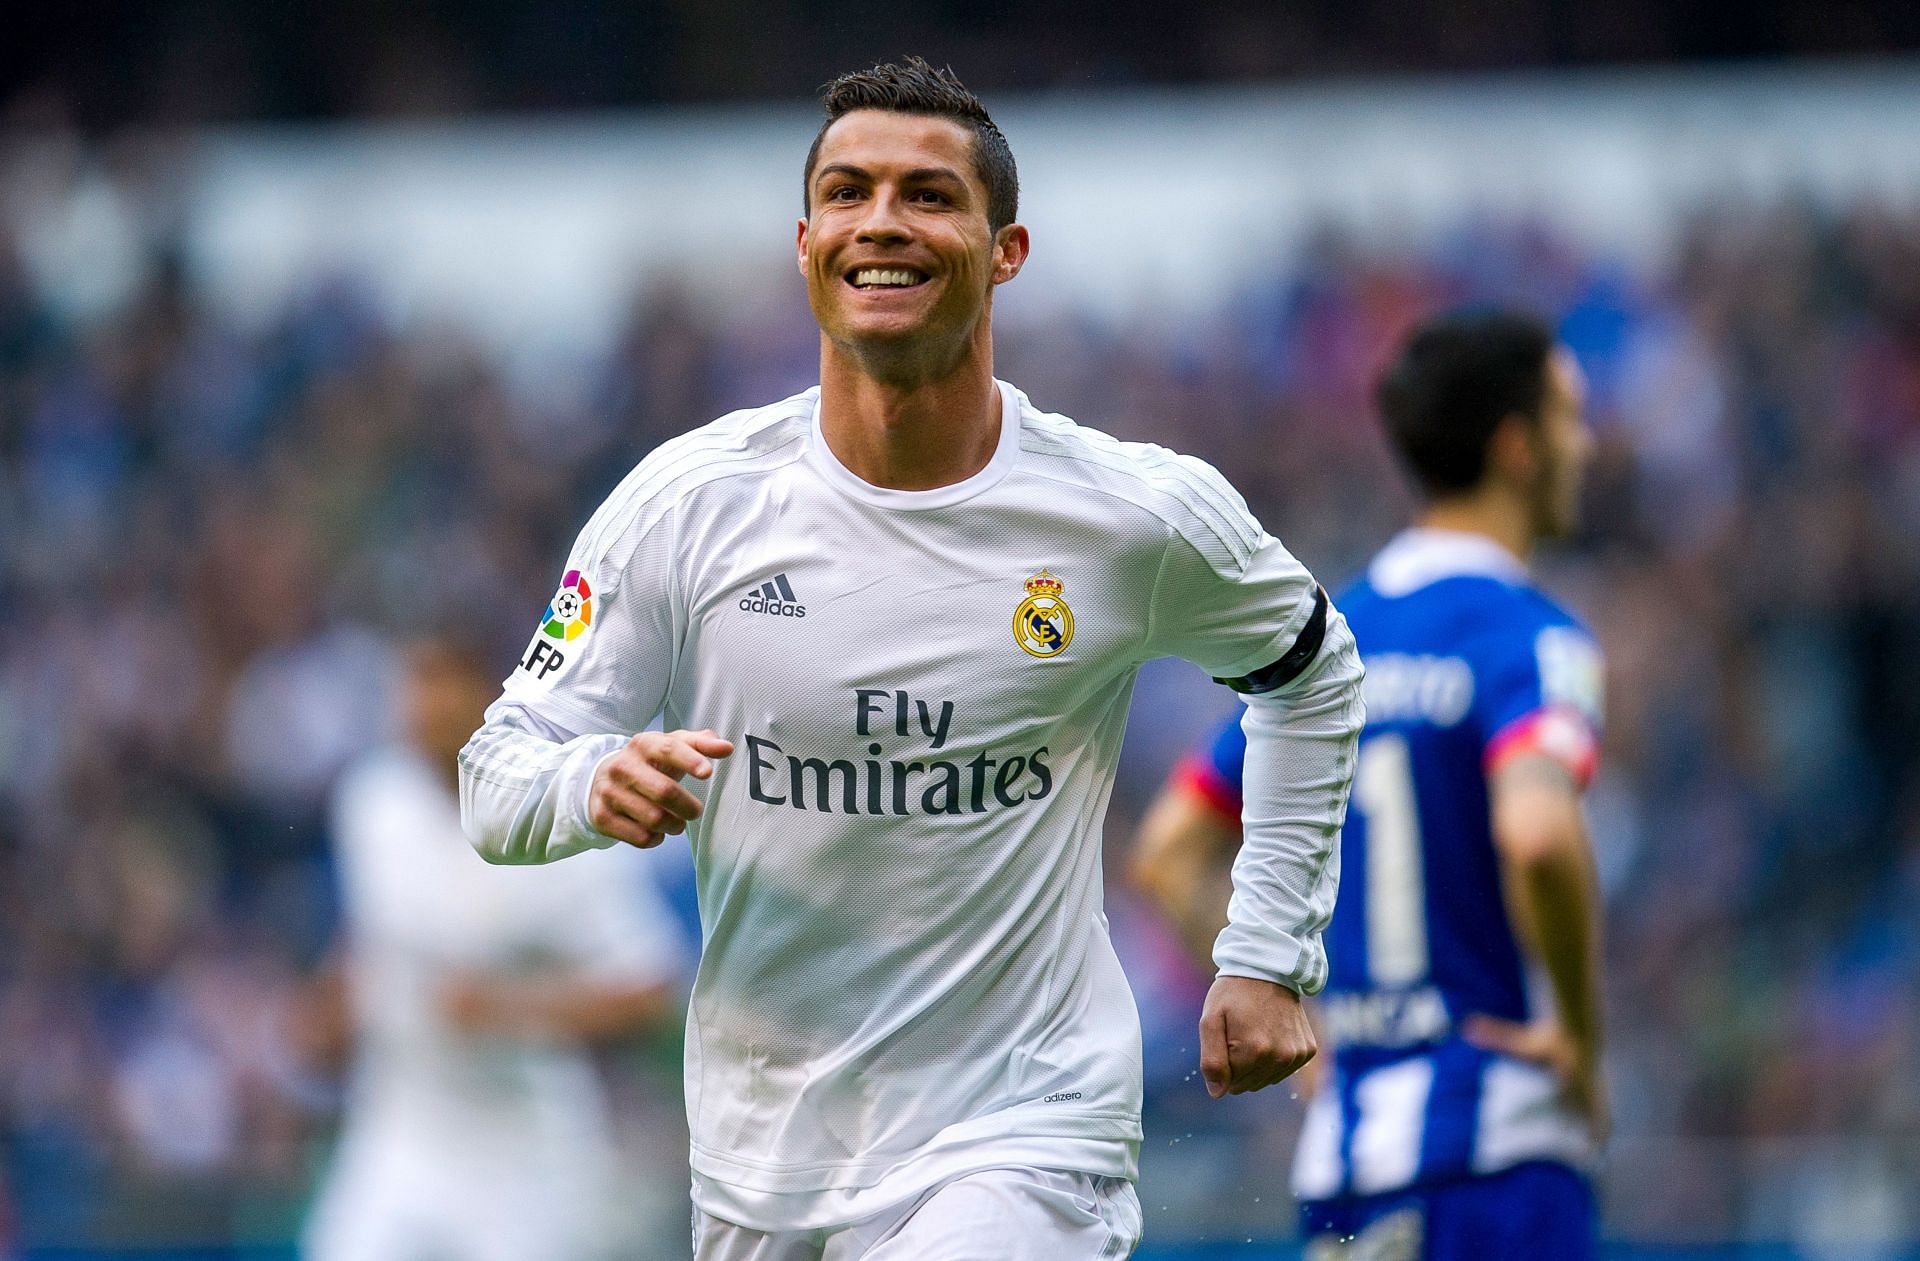 Ronaldo outscored Lionel Messi in 2015-16 season